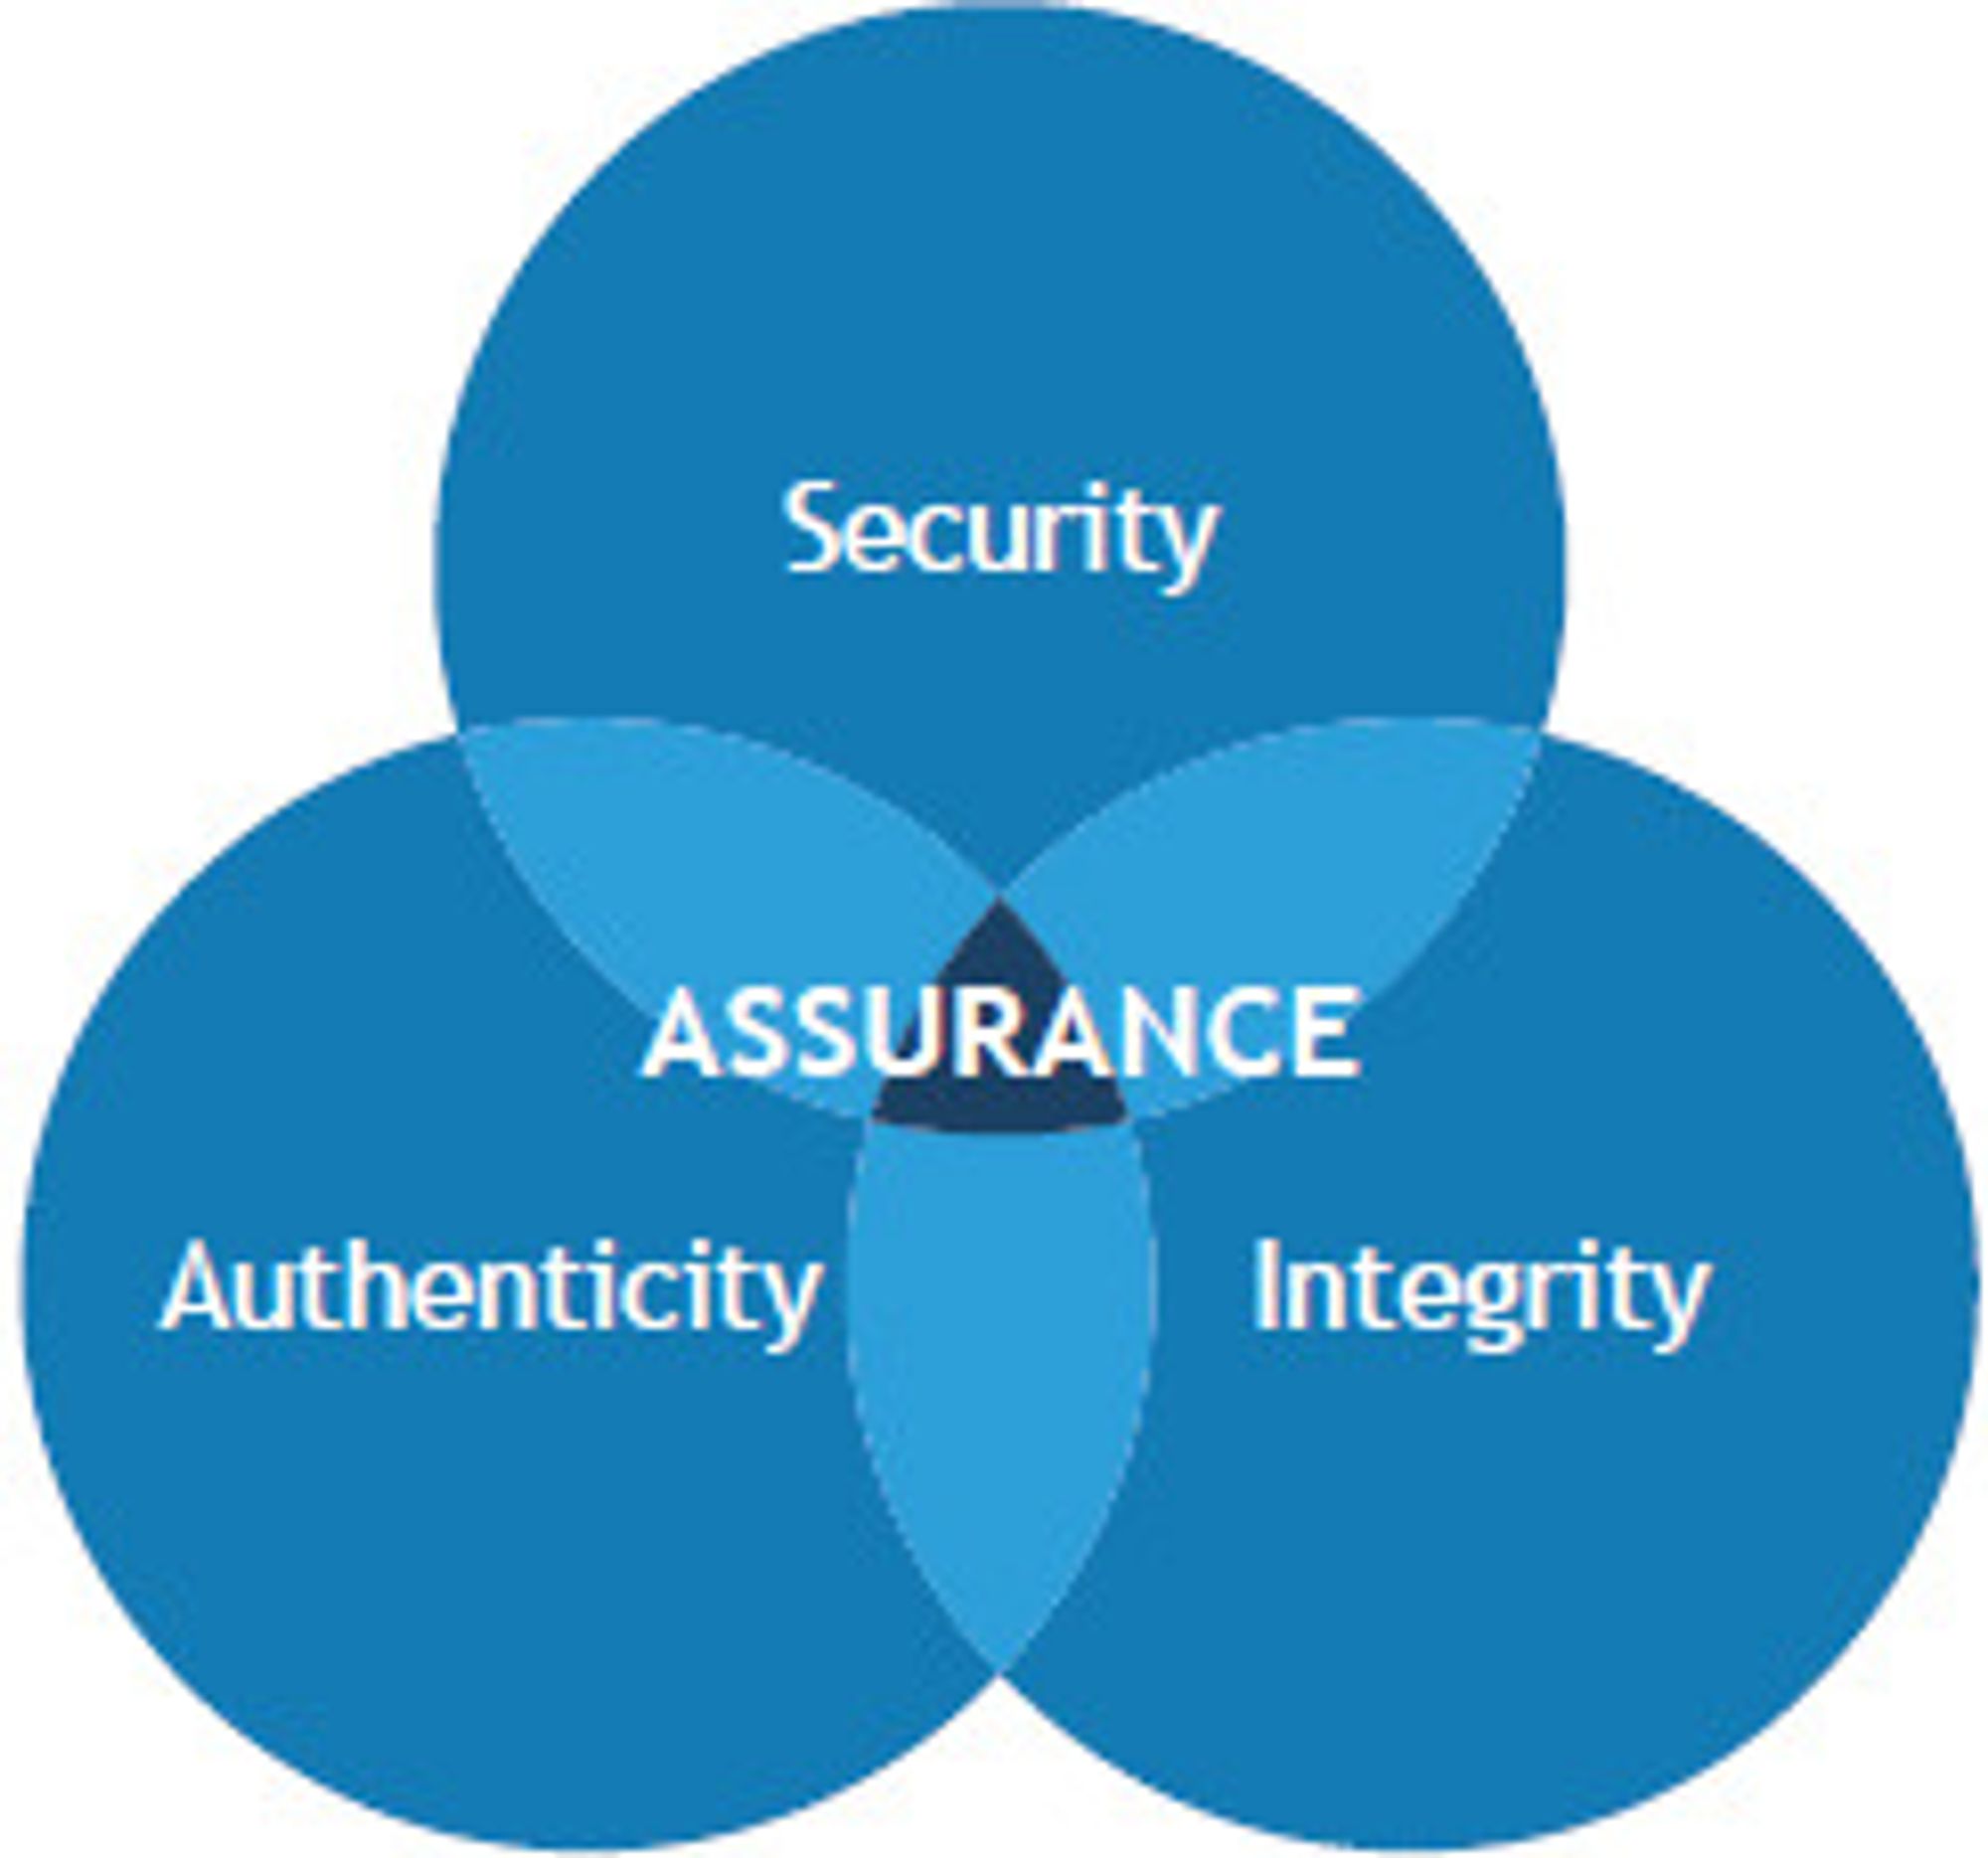 Tre faktorer bidrar til trygg programvare: sikkerhet, autentisitet og integritet.